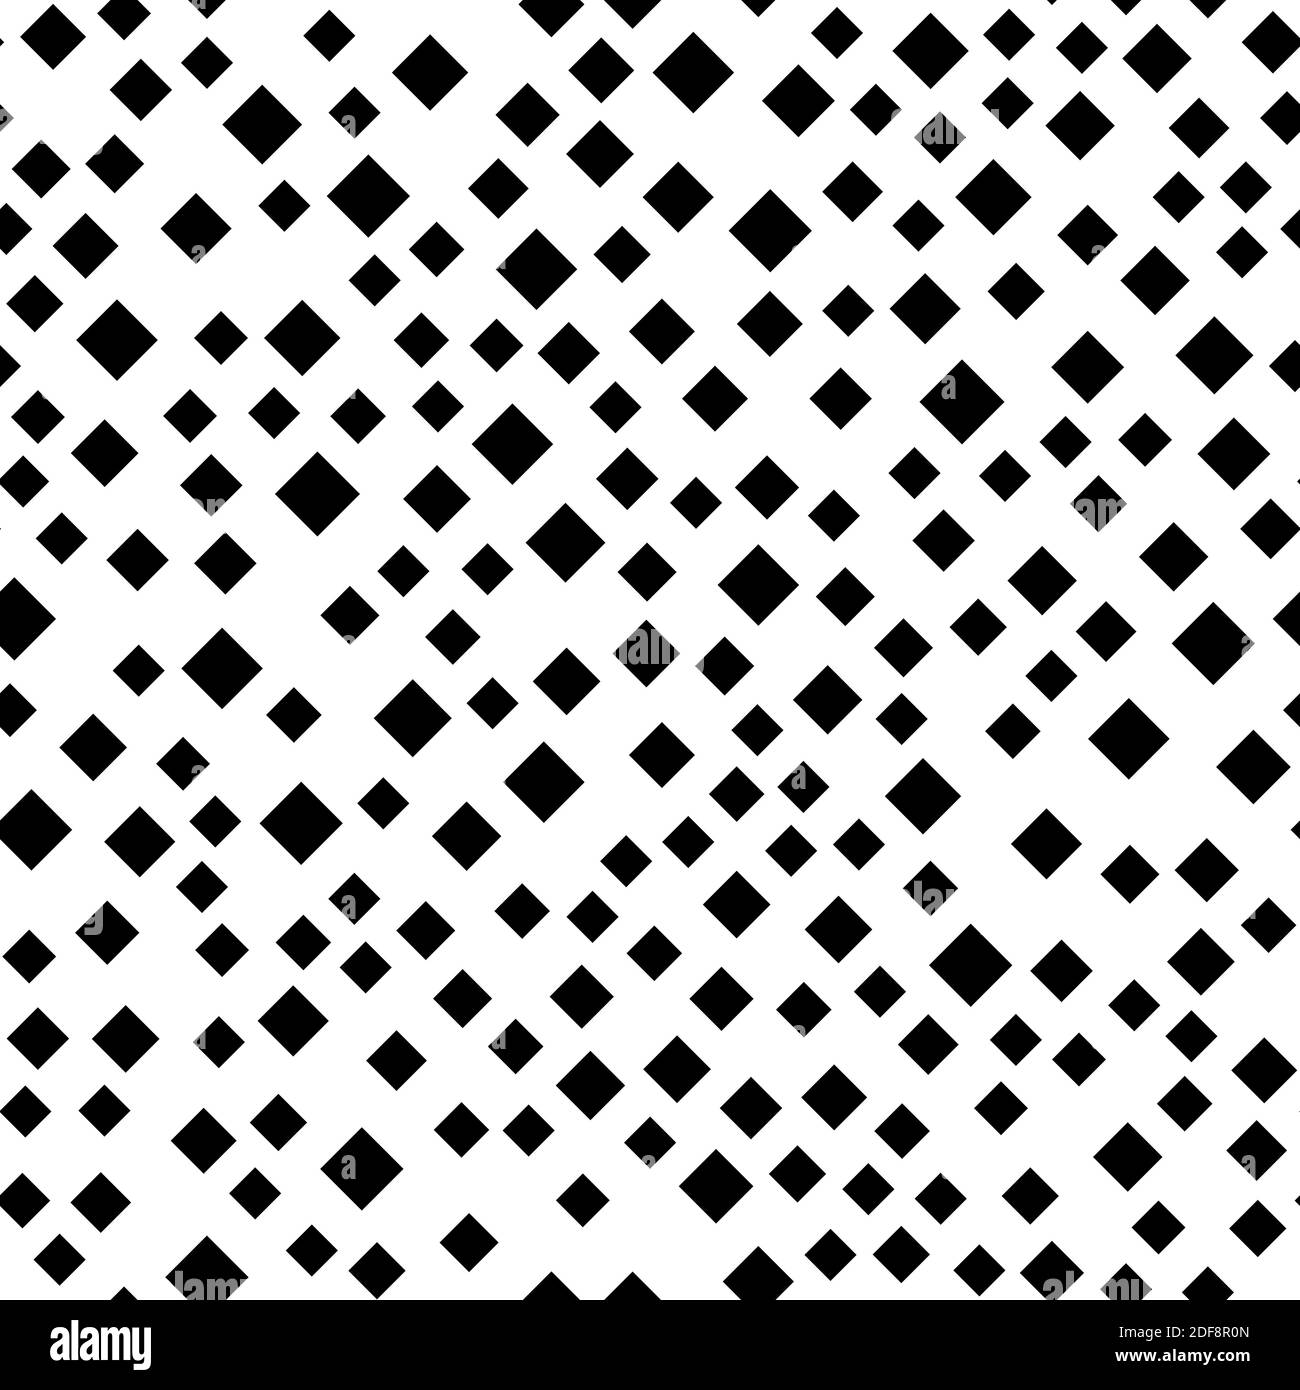 Motif géométrique abstrait sans couture des carrés noirs dans un ordre aléatoire. Illustration simple à vecteur plat. Illustration de Vecteur